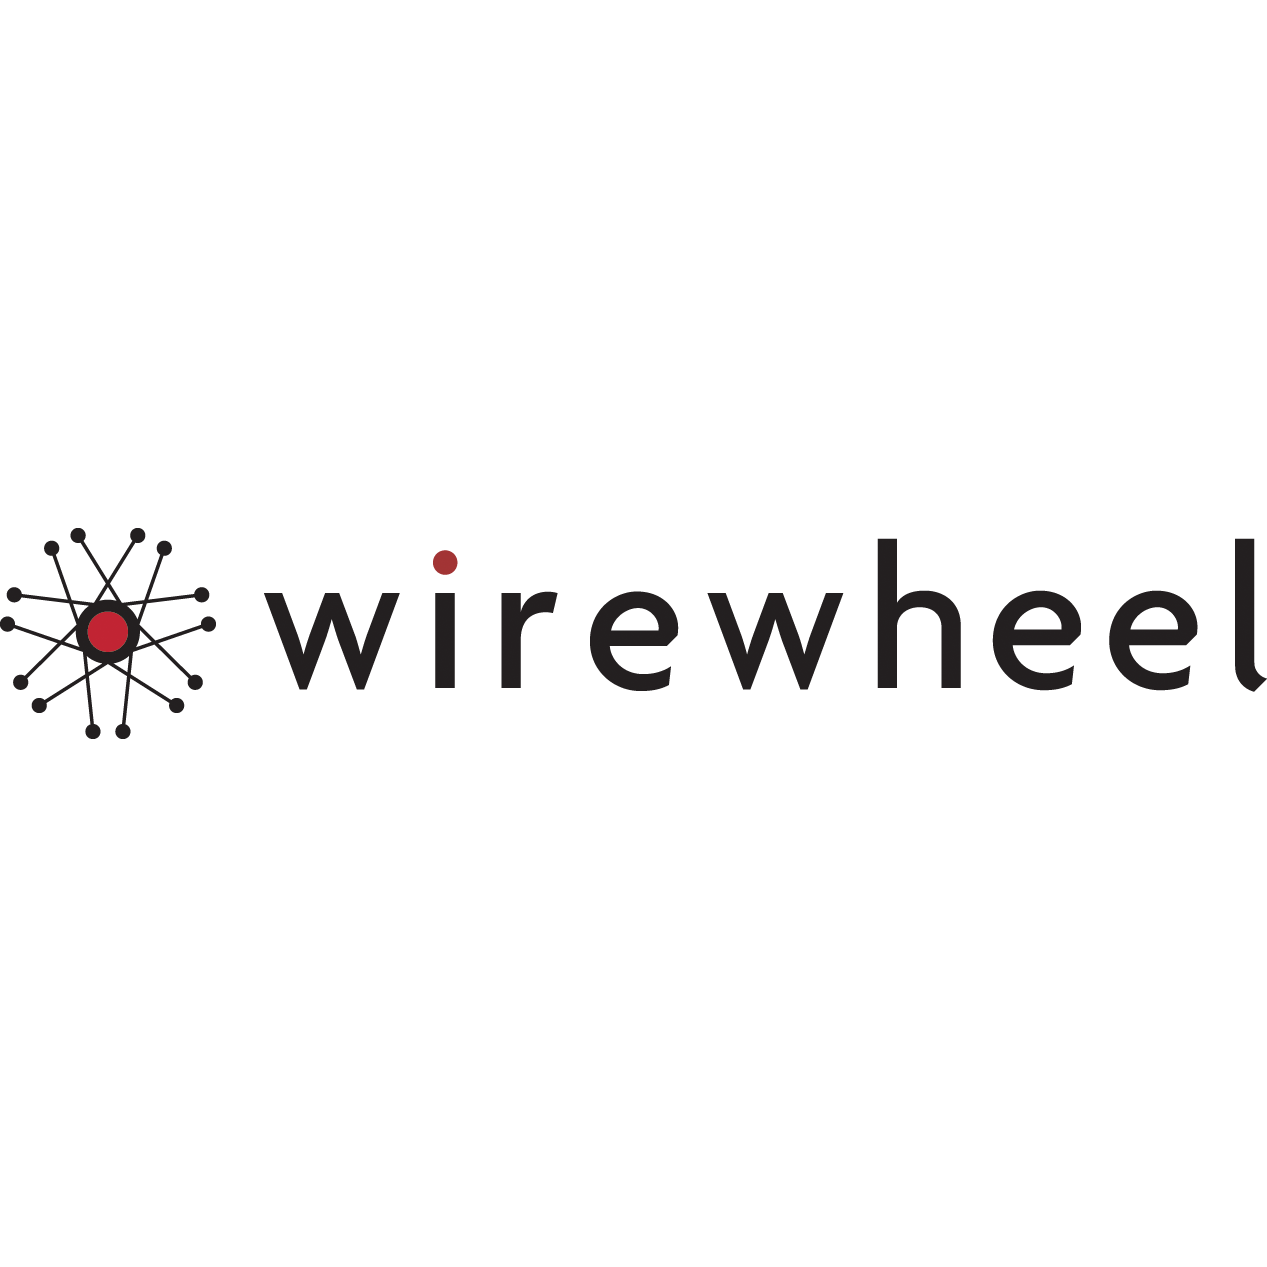 Wirewheel